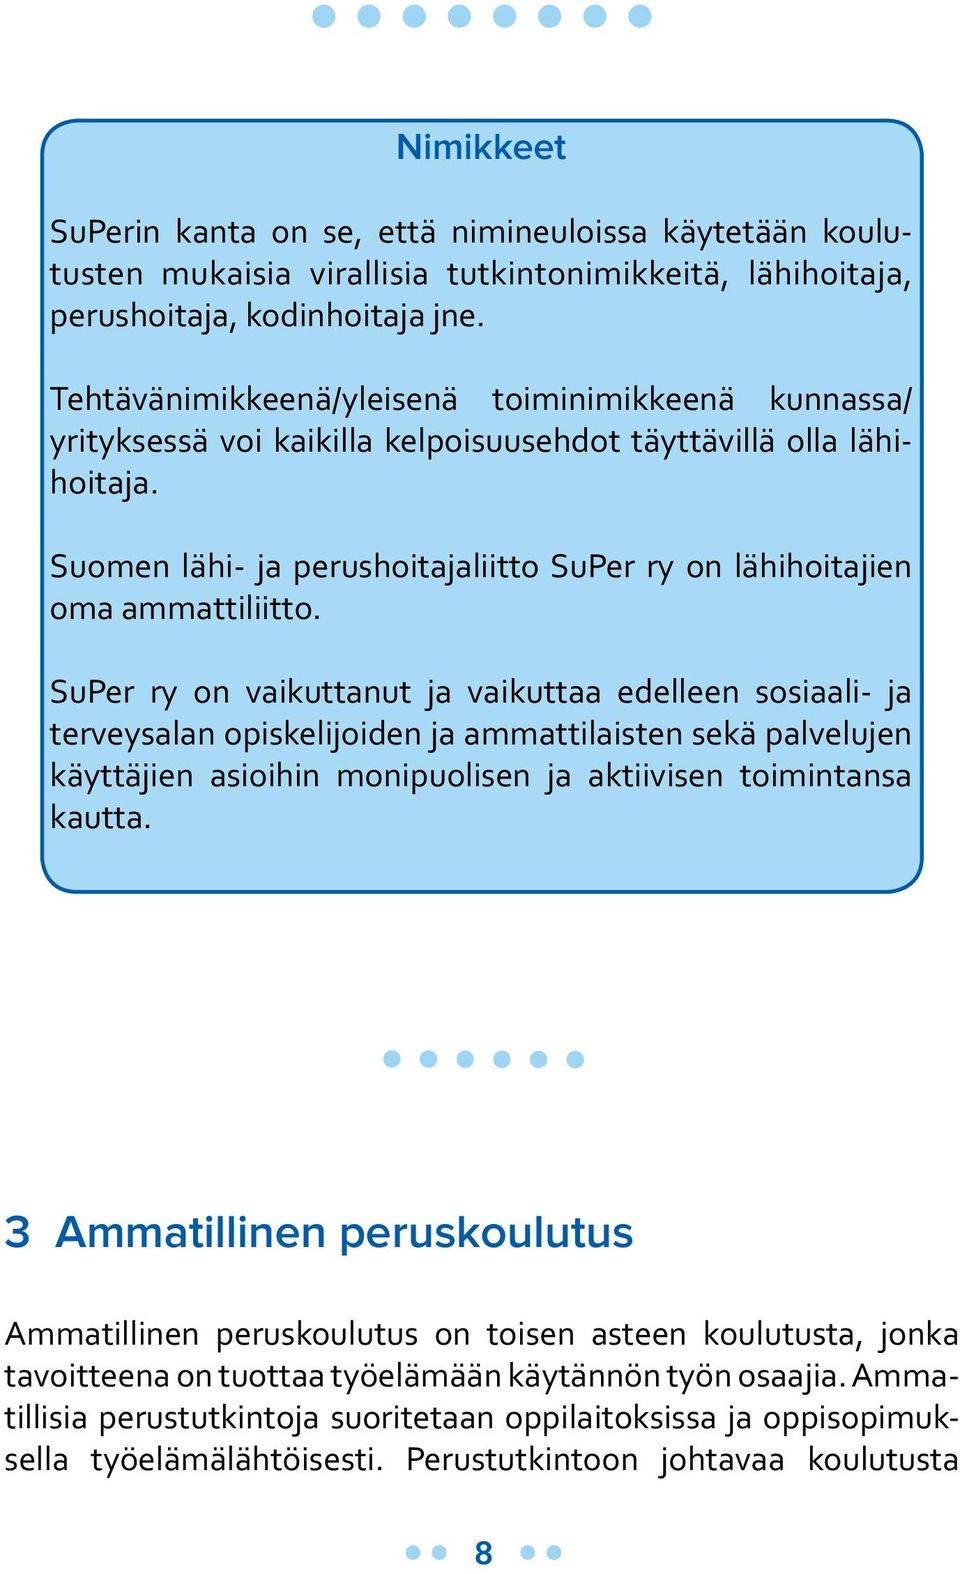 Suomen lähi- ja perushoitajaliitto SuPer ry on lähihoitajien oma ammattiliitto.